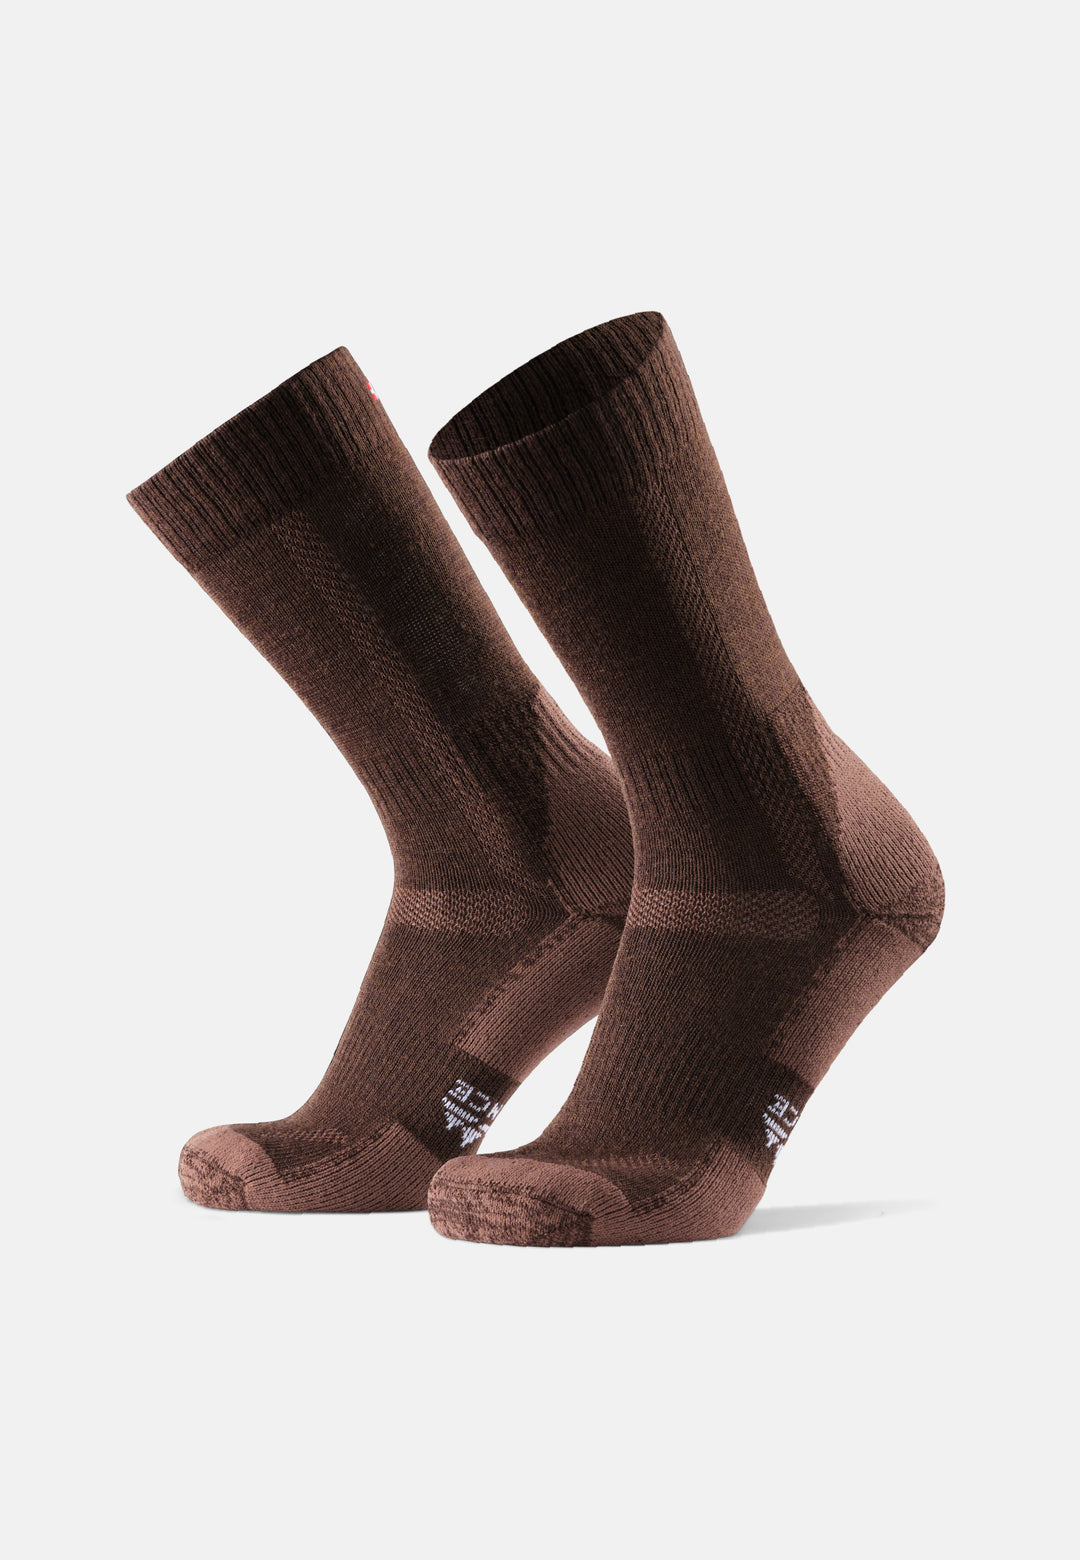  DG Hill 3 o 6 pares de calcetines de 80% lana merino para  hombres y mujeres, calcetines térmicos cálidos de lana para senderismo,  estilo de tripulación, absorben la humedad, Uva 